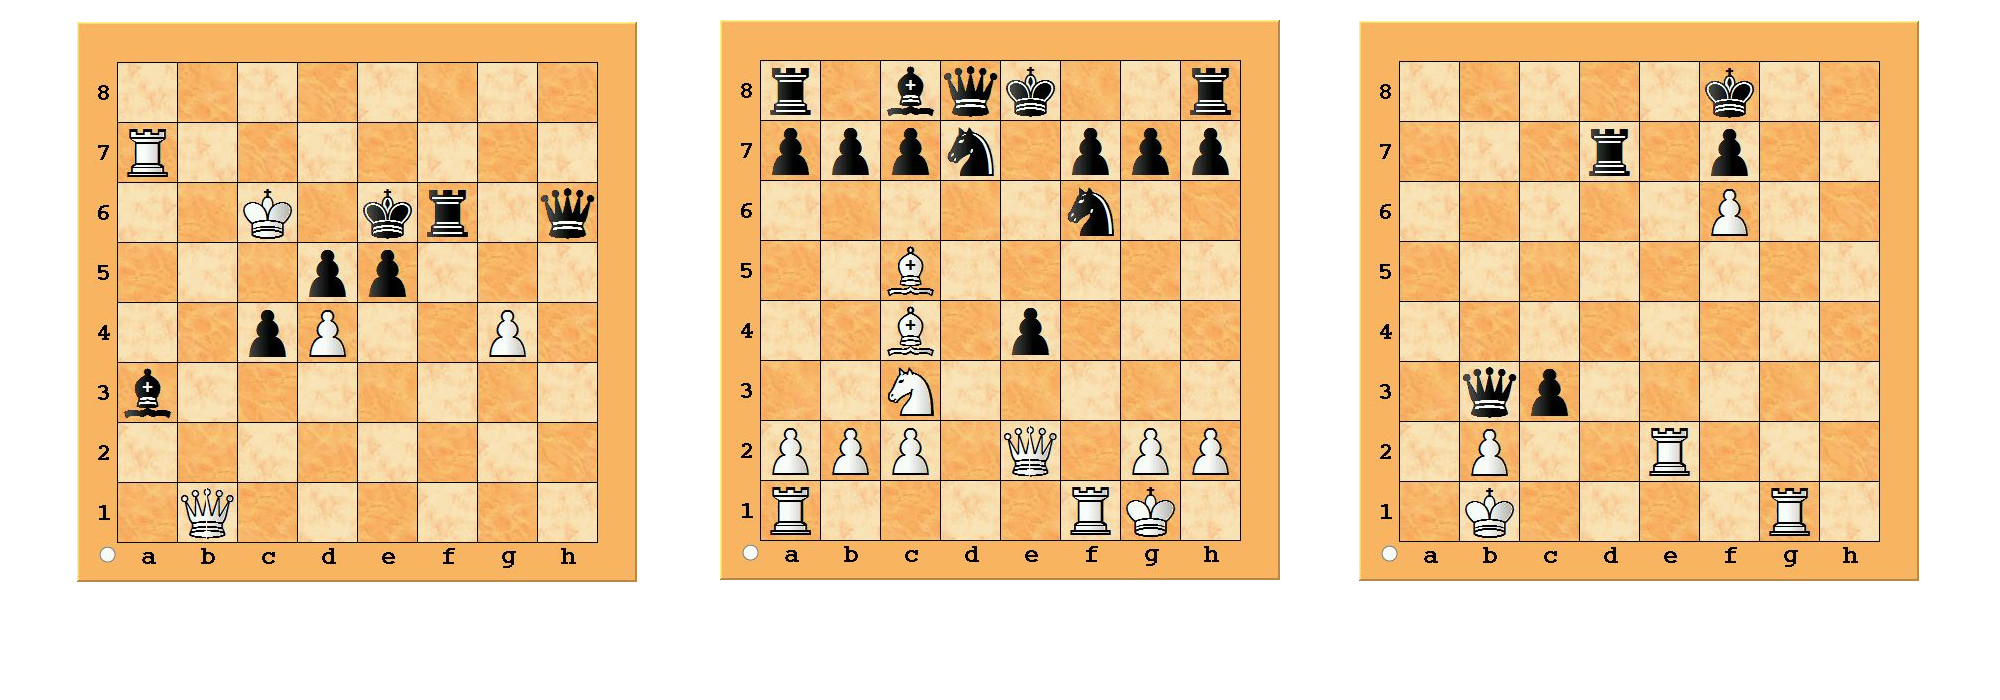 Schachclub Papenburg 1947 e.V.